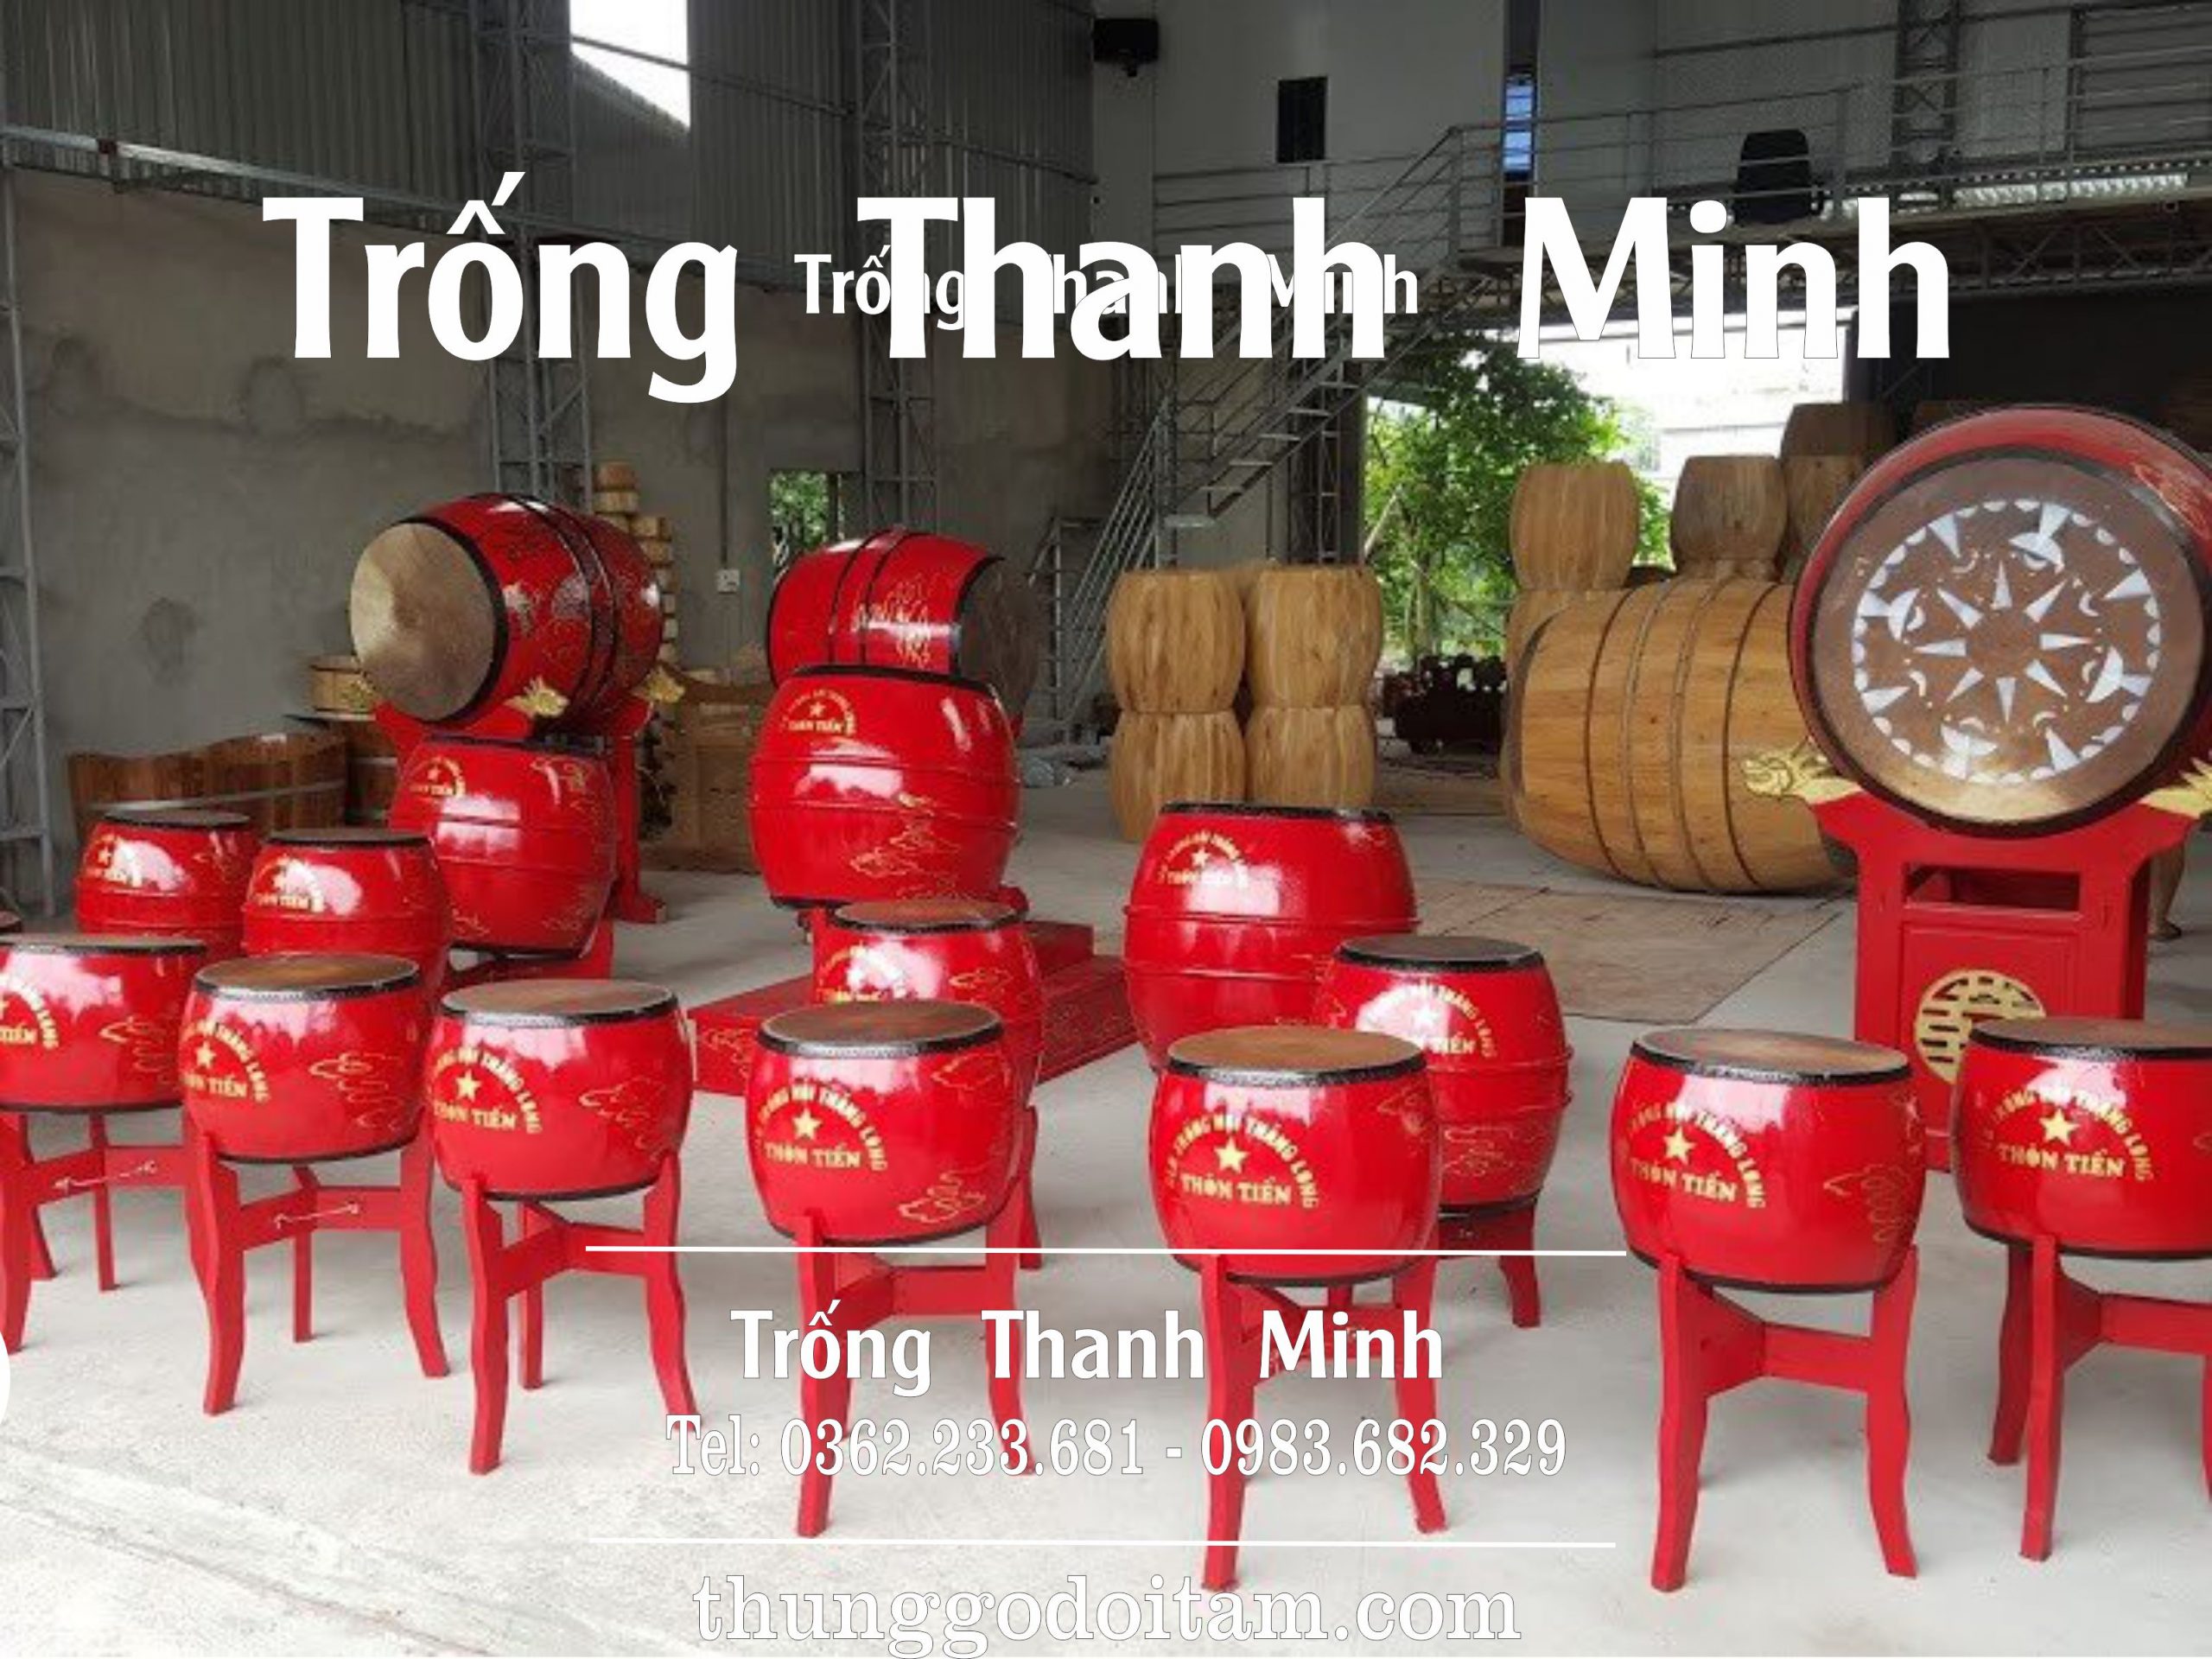 Xưởng sản xuất trống trường học Thanh Minh uy tín chất lượng tốt.